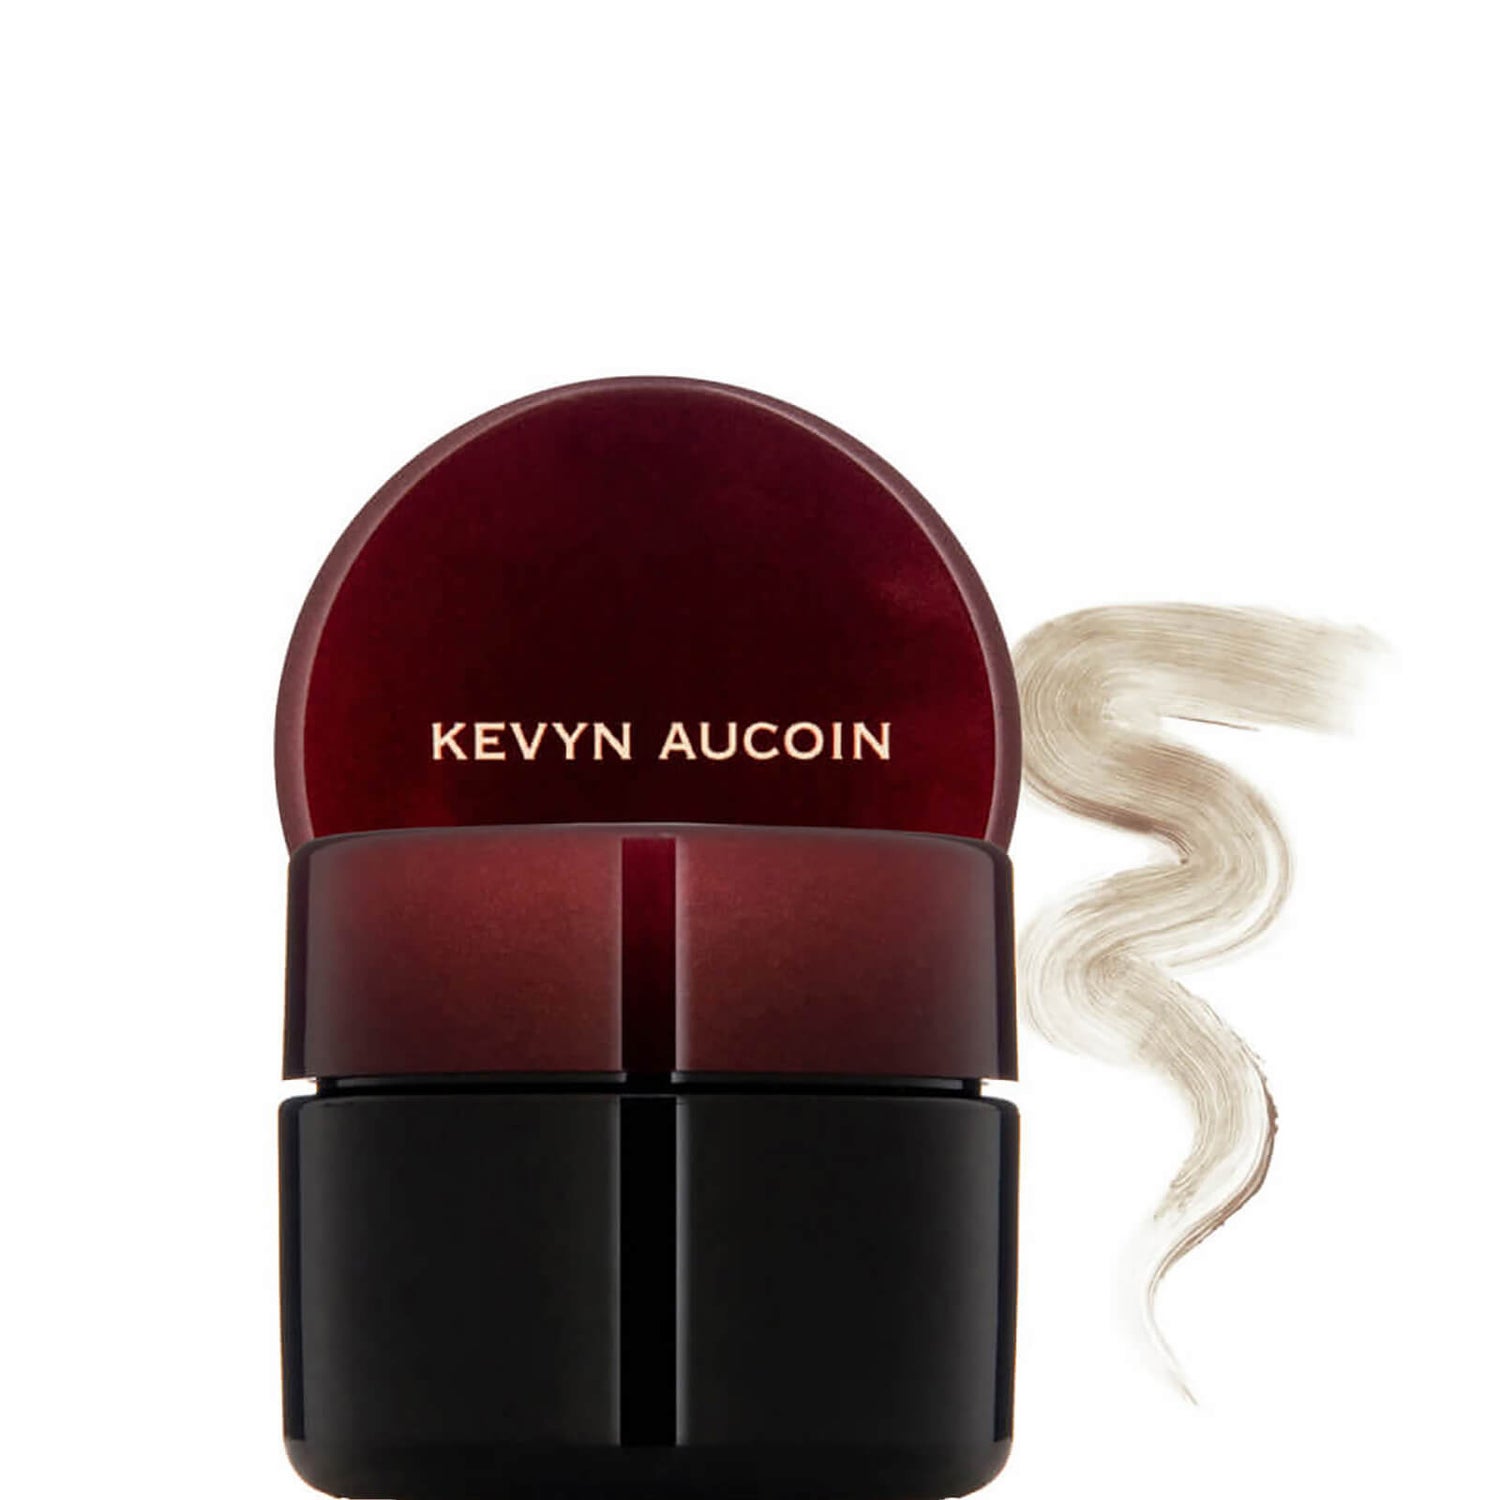 Kevyn Aucoin The Sensual Skin Enhancer (Various Shades)